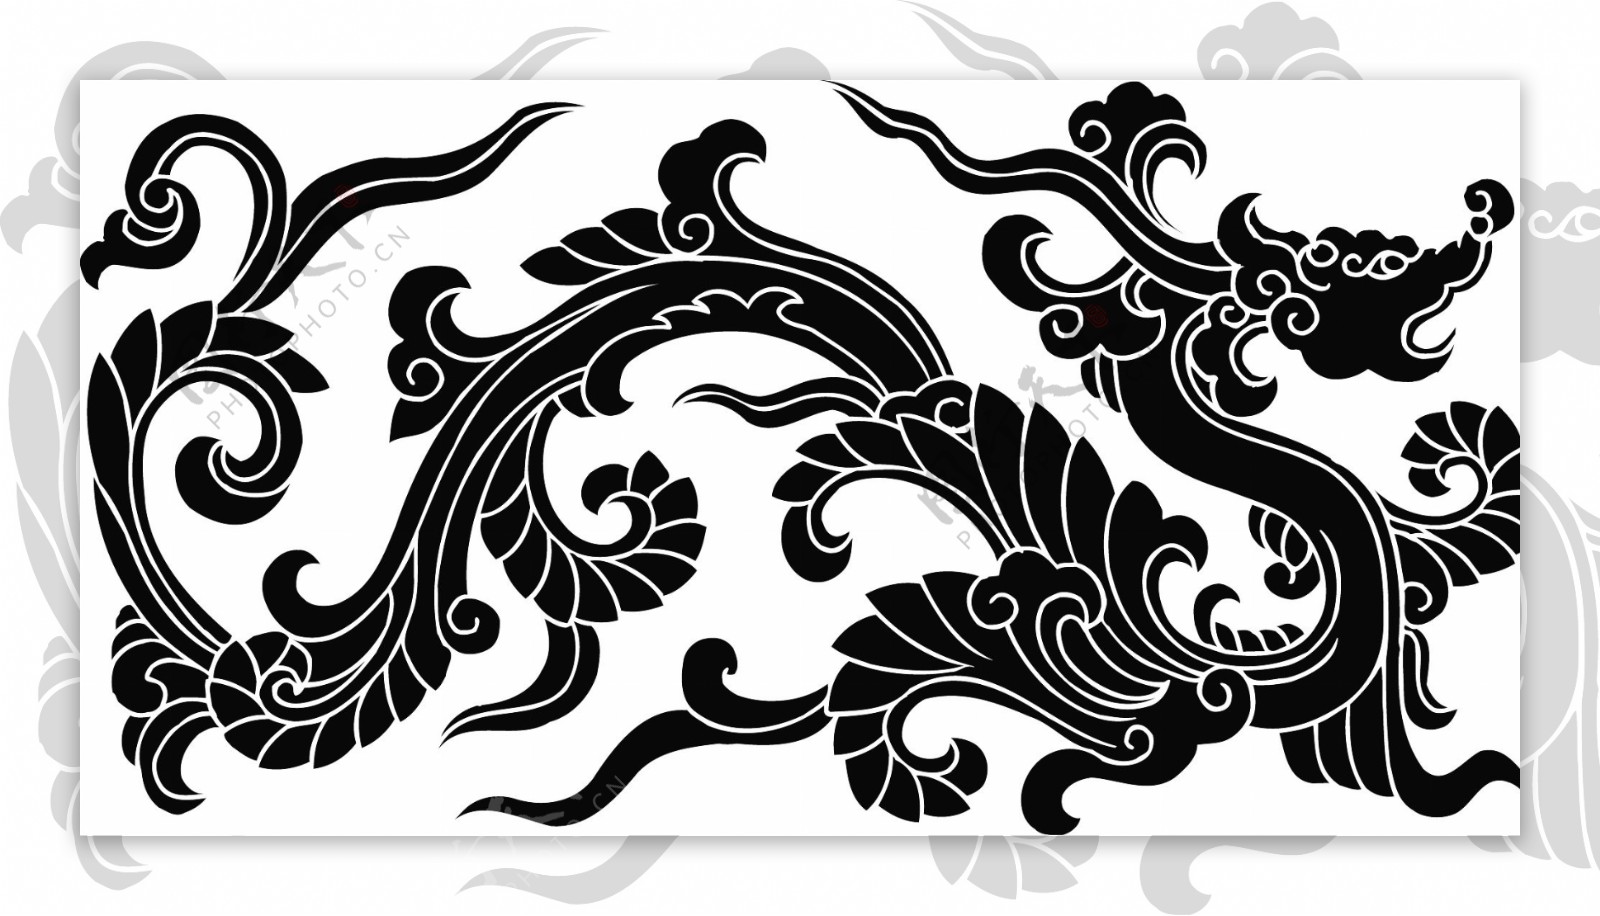 中国古典龙纹矢量素材龙矢量图传统图案矢量图花纹矢量